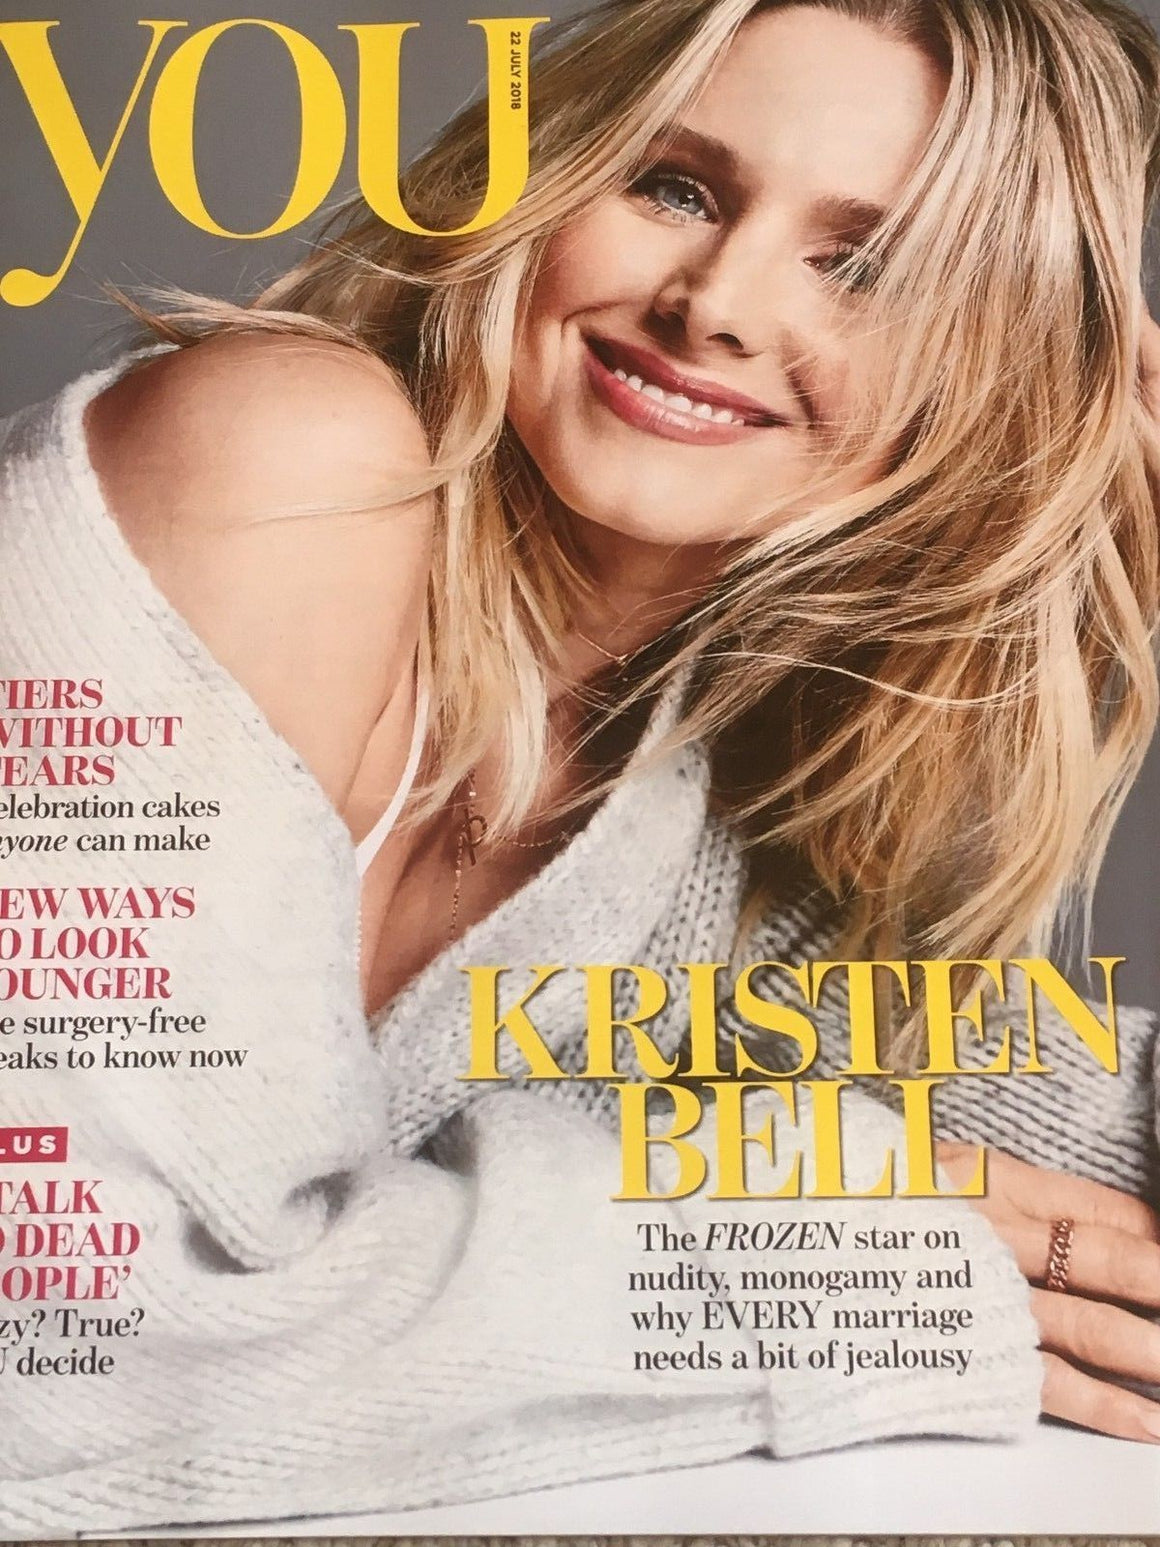 YOU magazine July 2018: Kristen Bell (Frozen) Cover Interview (Brian Littrell)